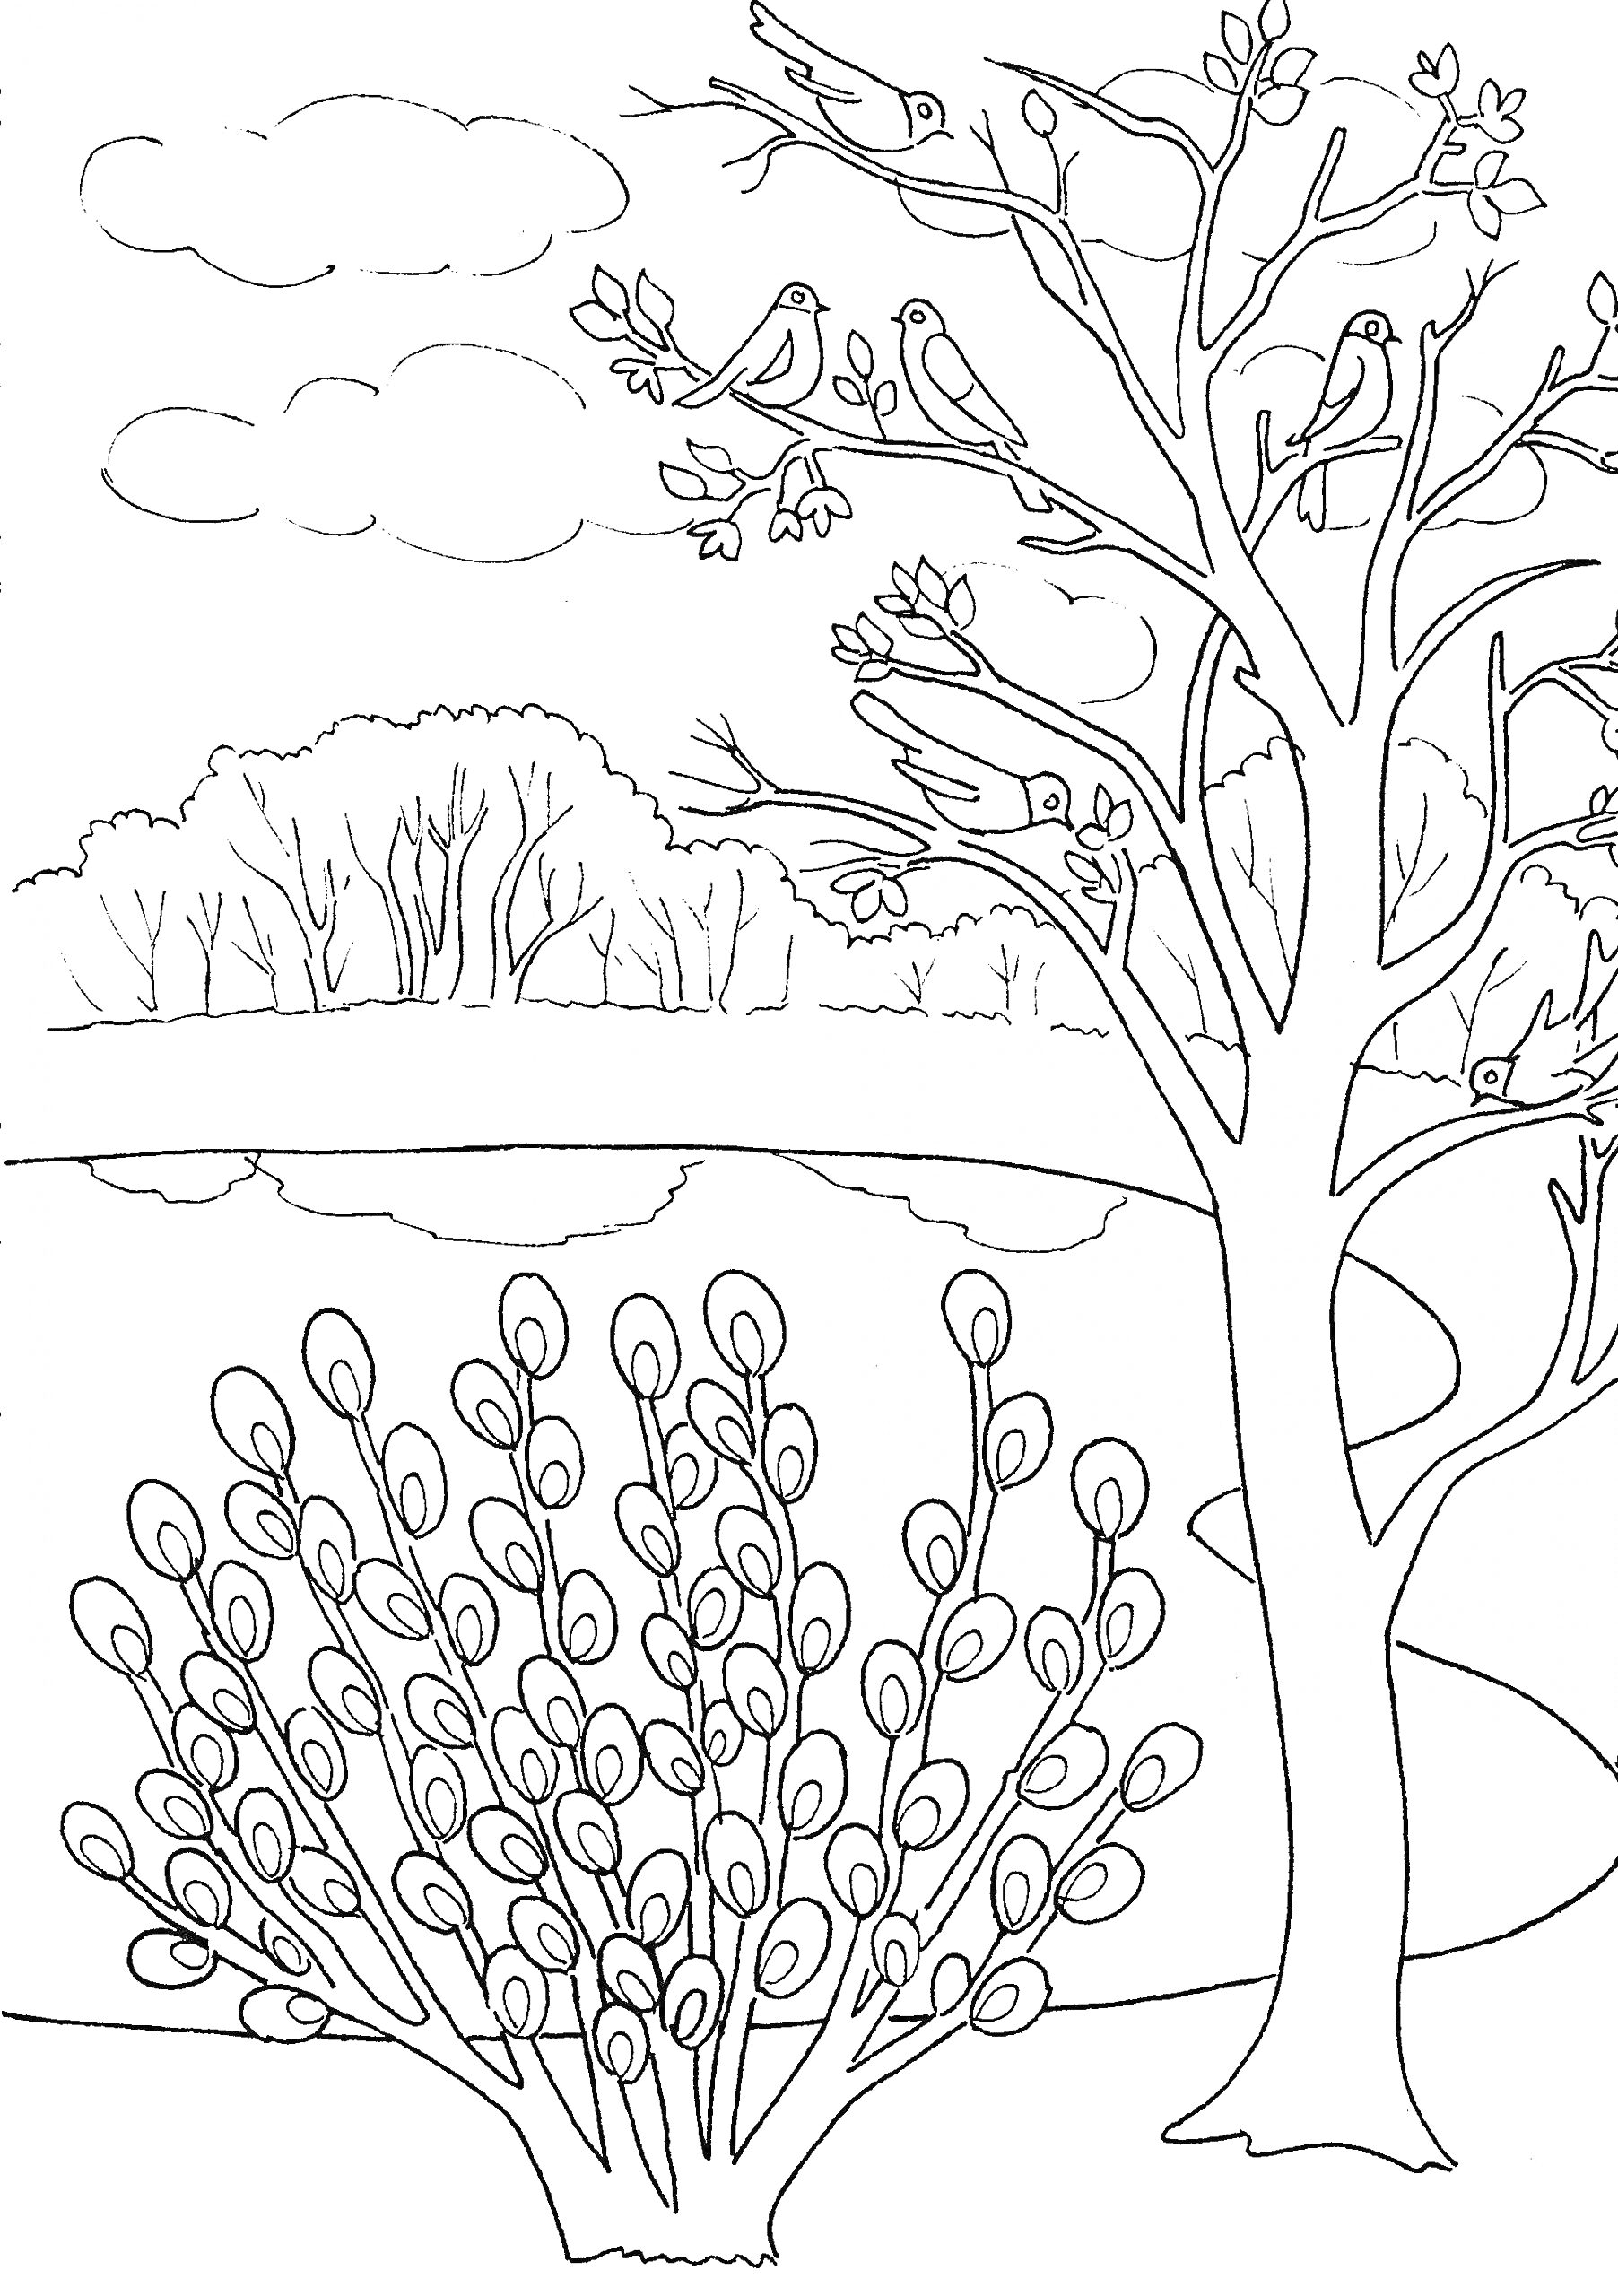 Раскраска Весенний пейзаж с птицами на дереве и кустом вербы у озера